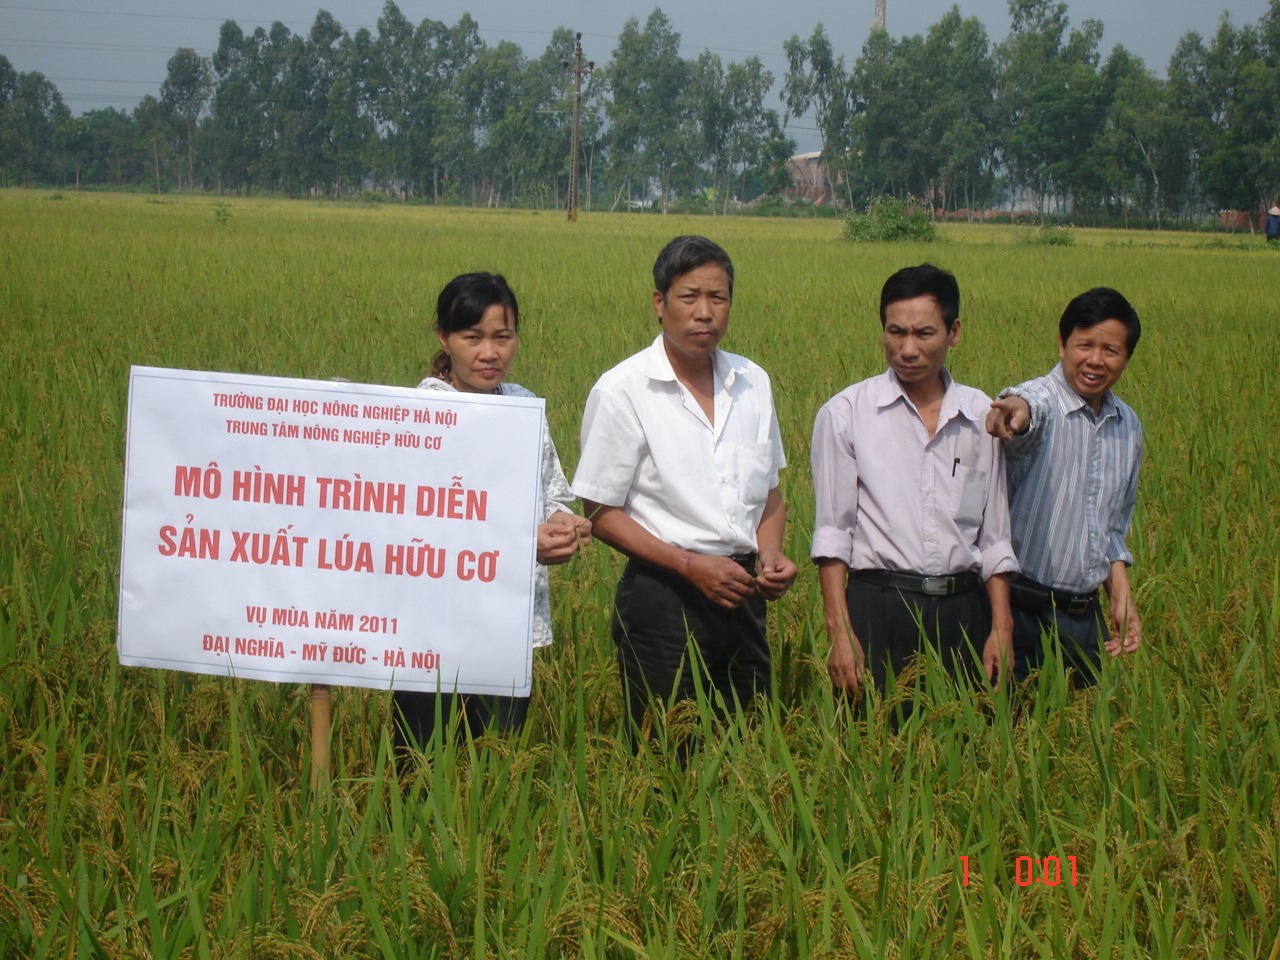 Trung tâm nông nghiệp hữu cơ nghiên cứu xây dựng quy trình sản xuất lúa hữu cơ tại Mỹ Đức, Hà Nội, 2010.